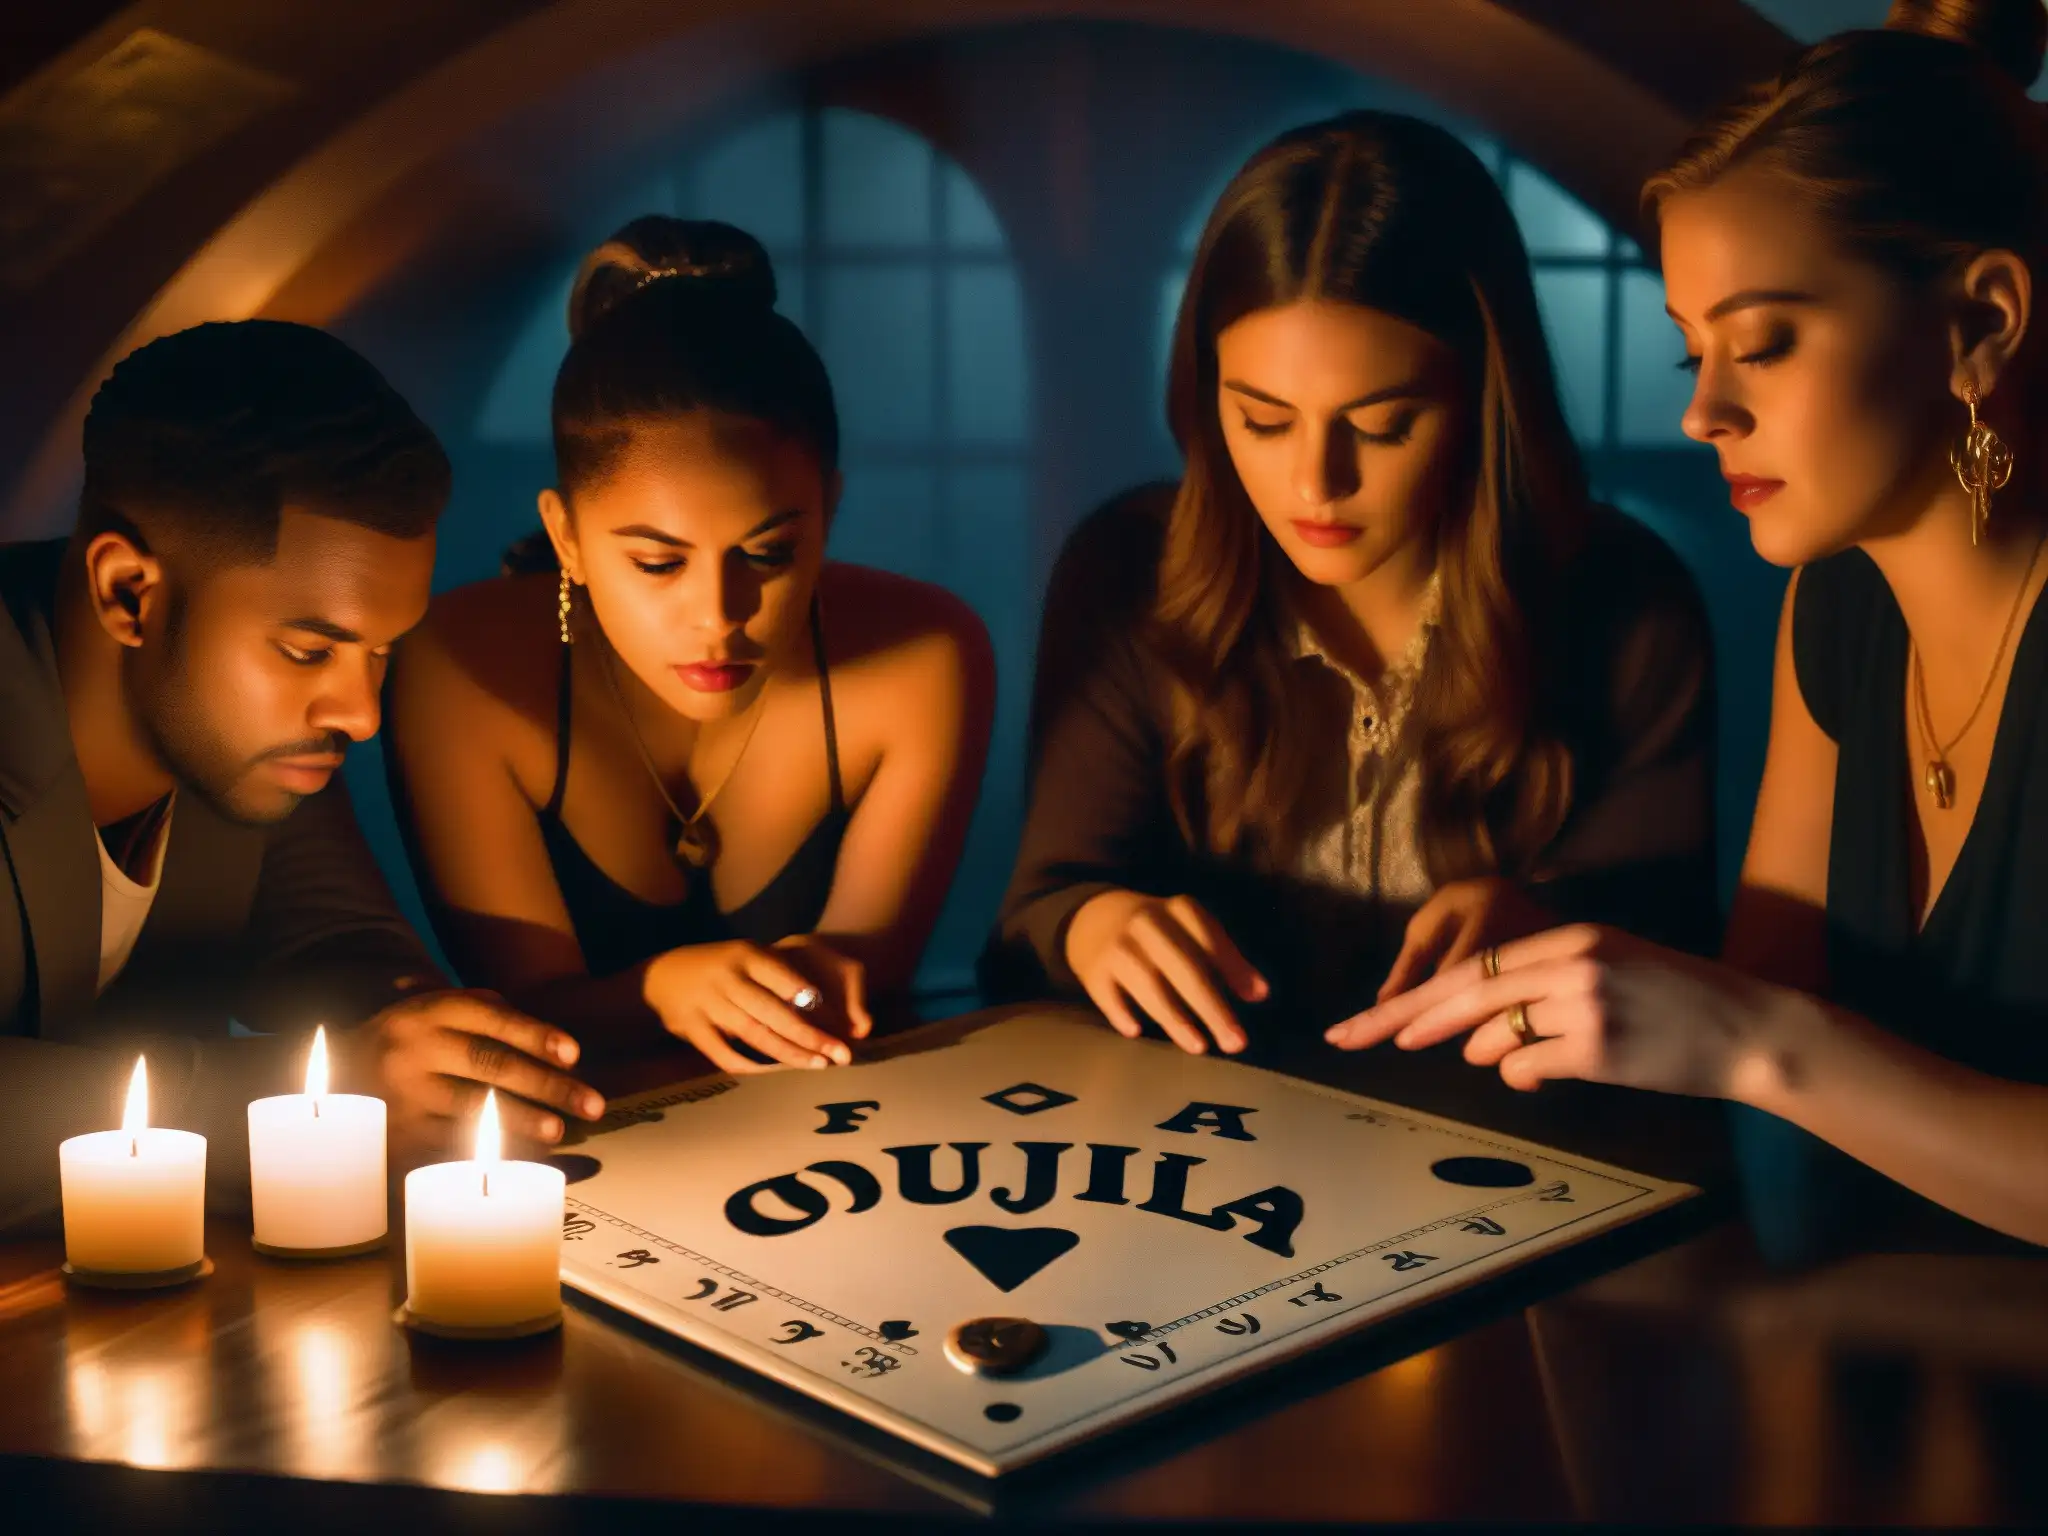 Un grupo de personas en tensión alrededor de una ouija en una habitación misteriosa